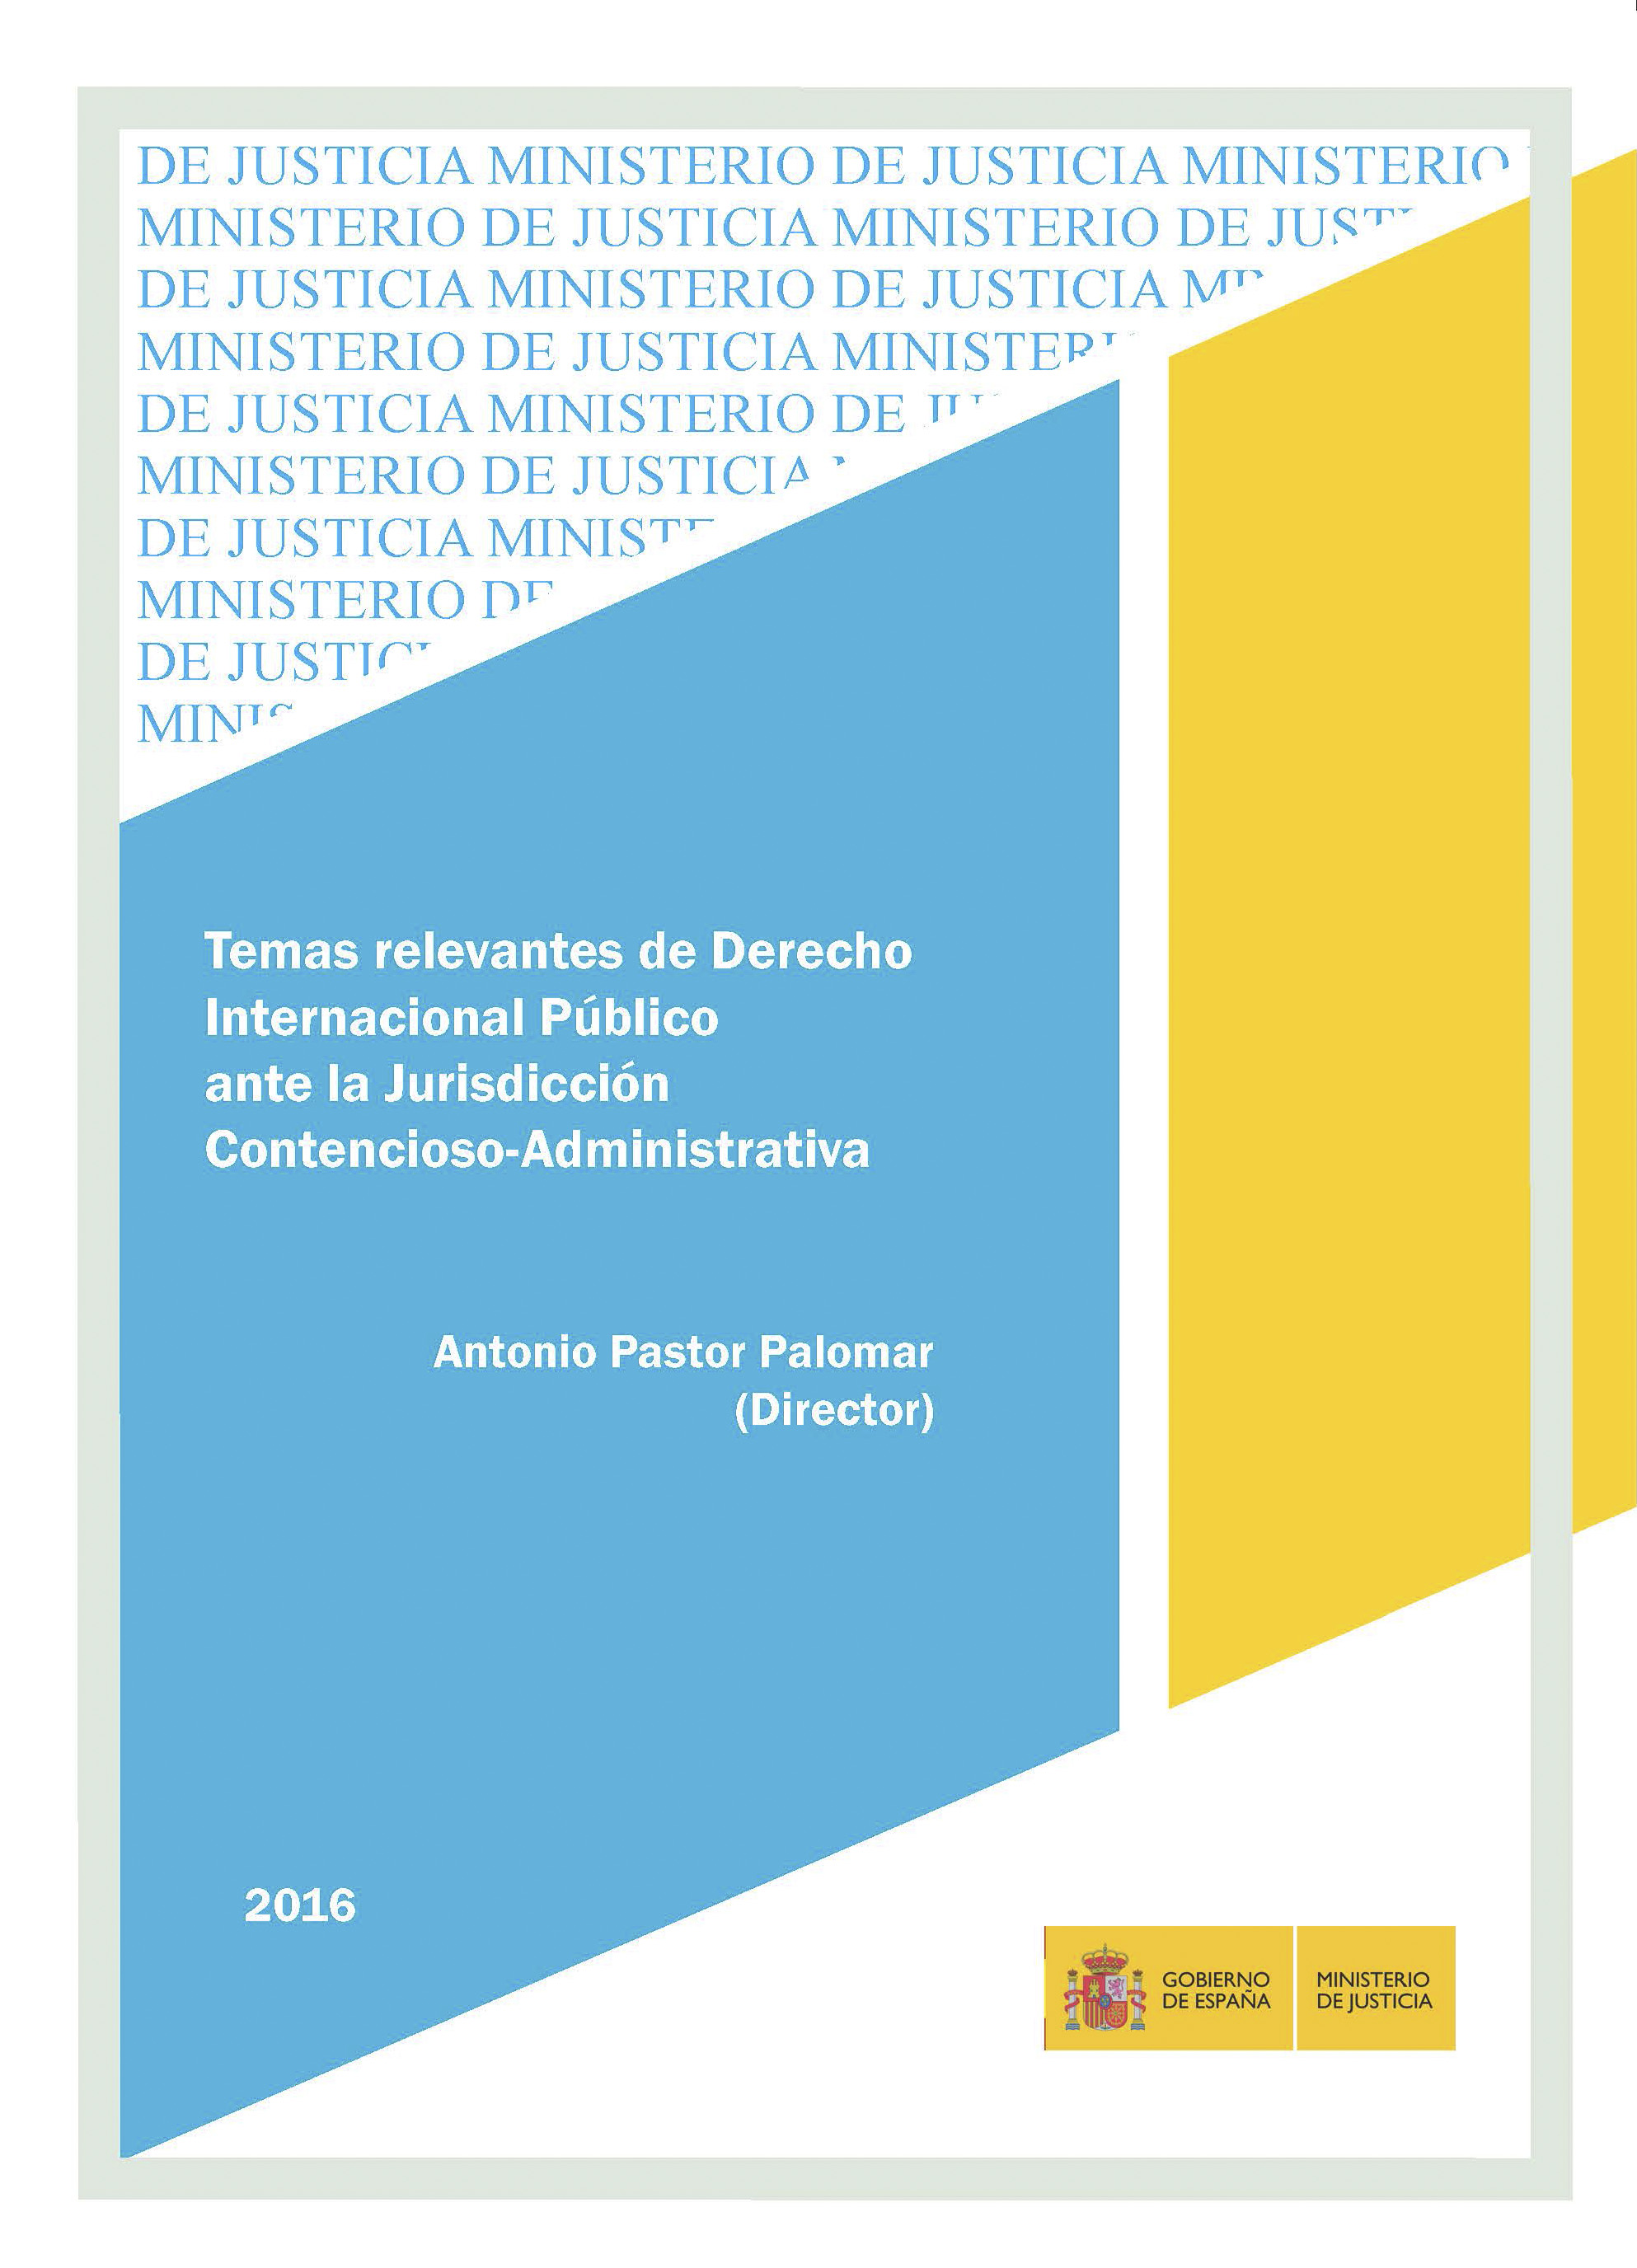 View details of TEMAS RELEVANTES DE DERECHO INTERNACIONAL PÚBLICO ANTE LA JURISDICCIÓN CONTENCIOSO-ADMINISTRATIVA